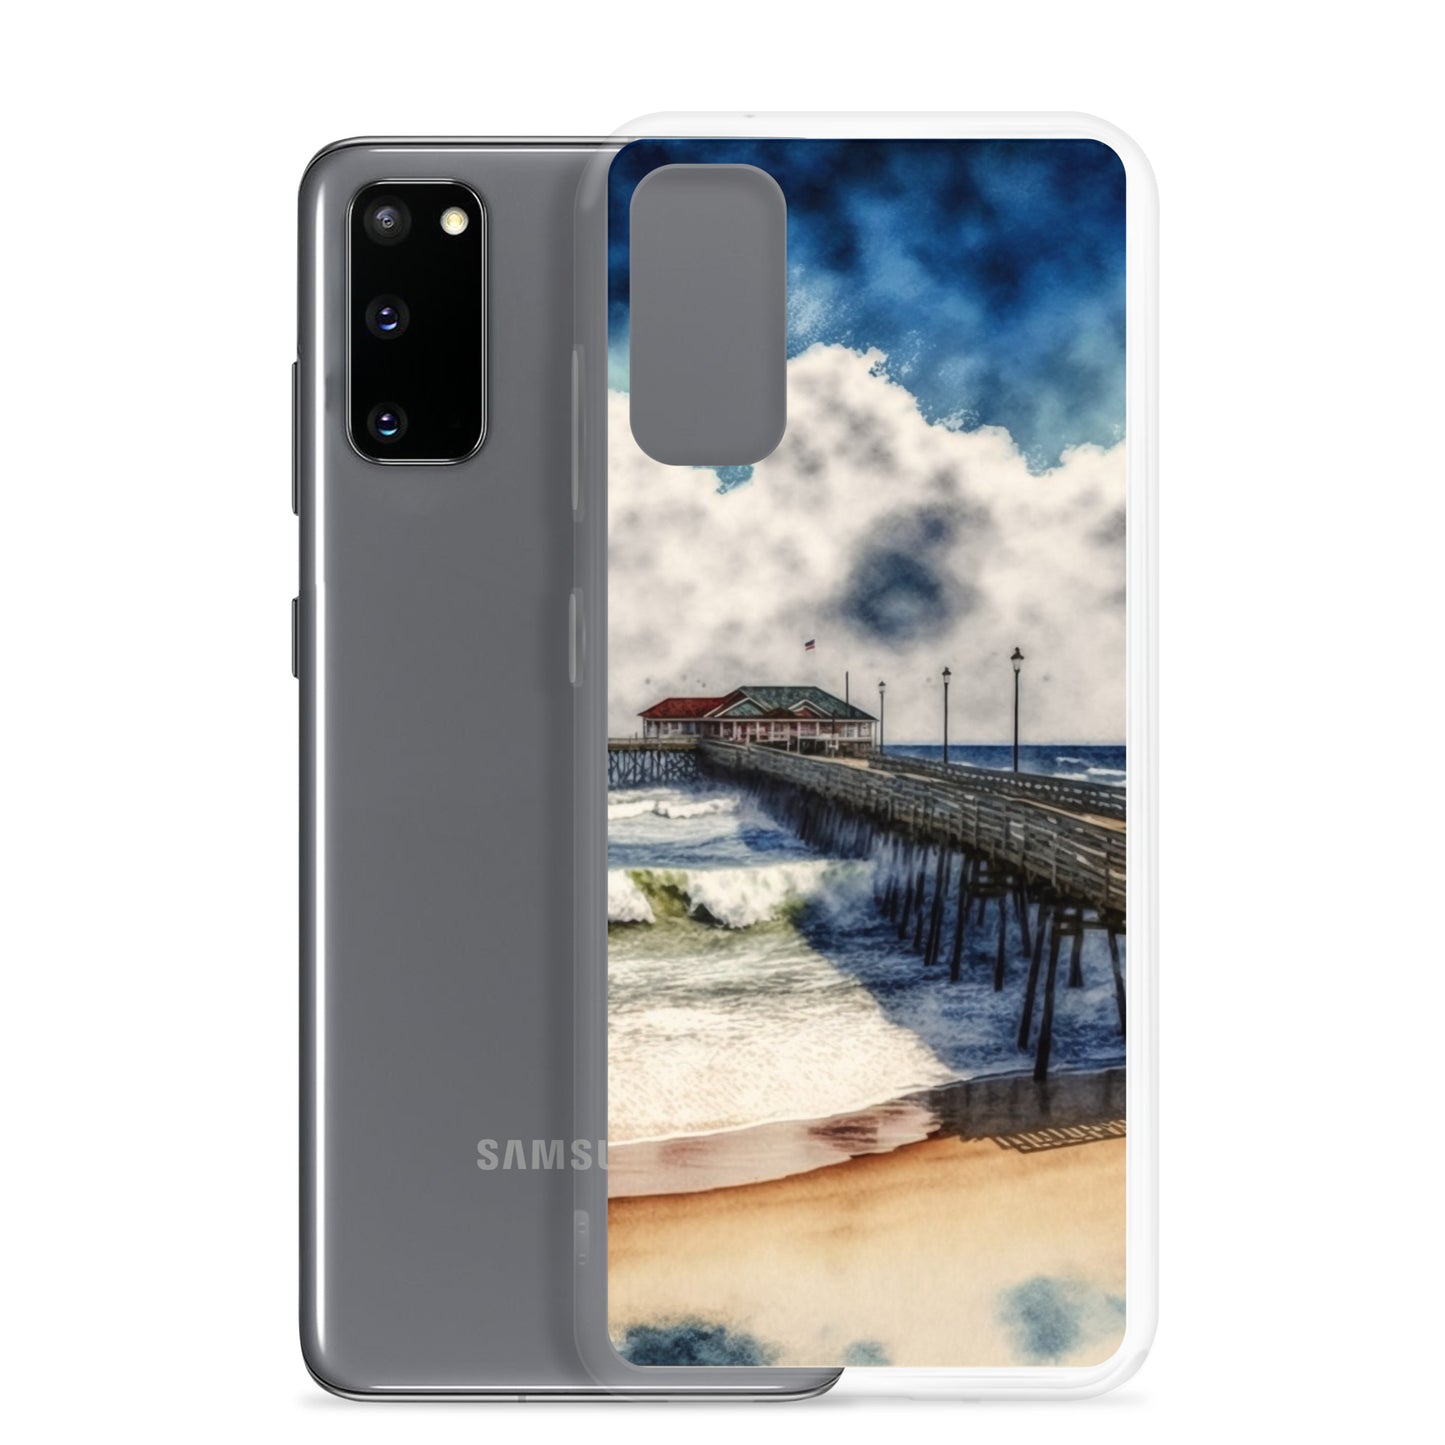 Samsung Case - Beach Life - Beach Pier